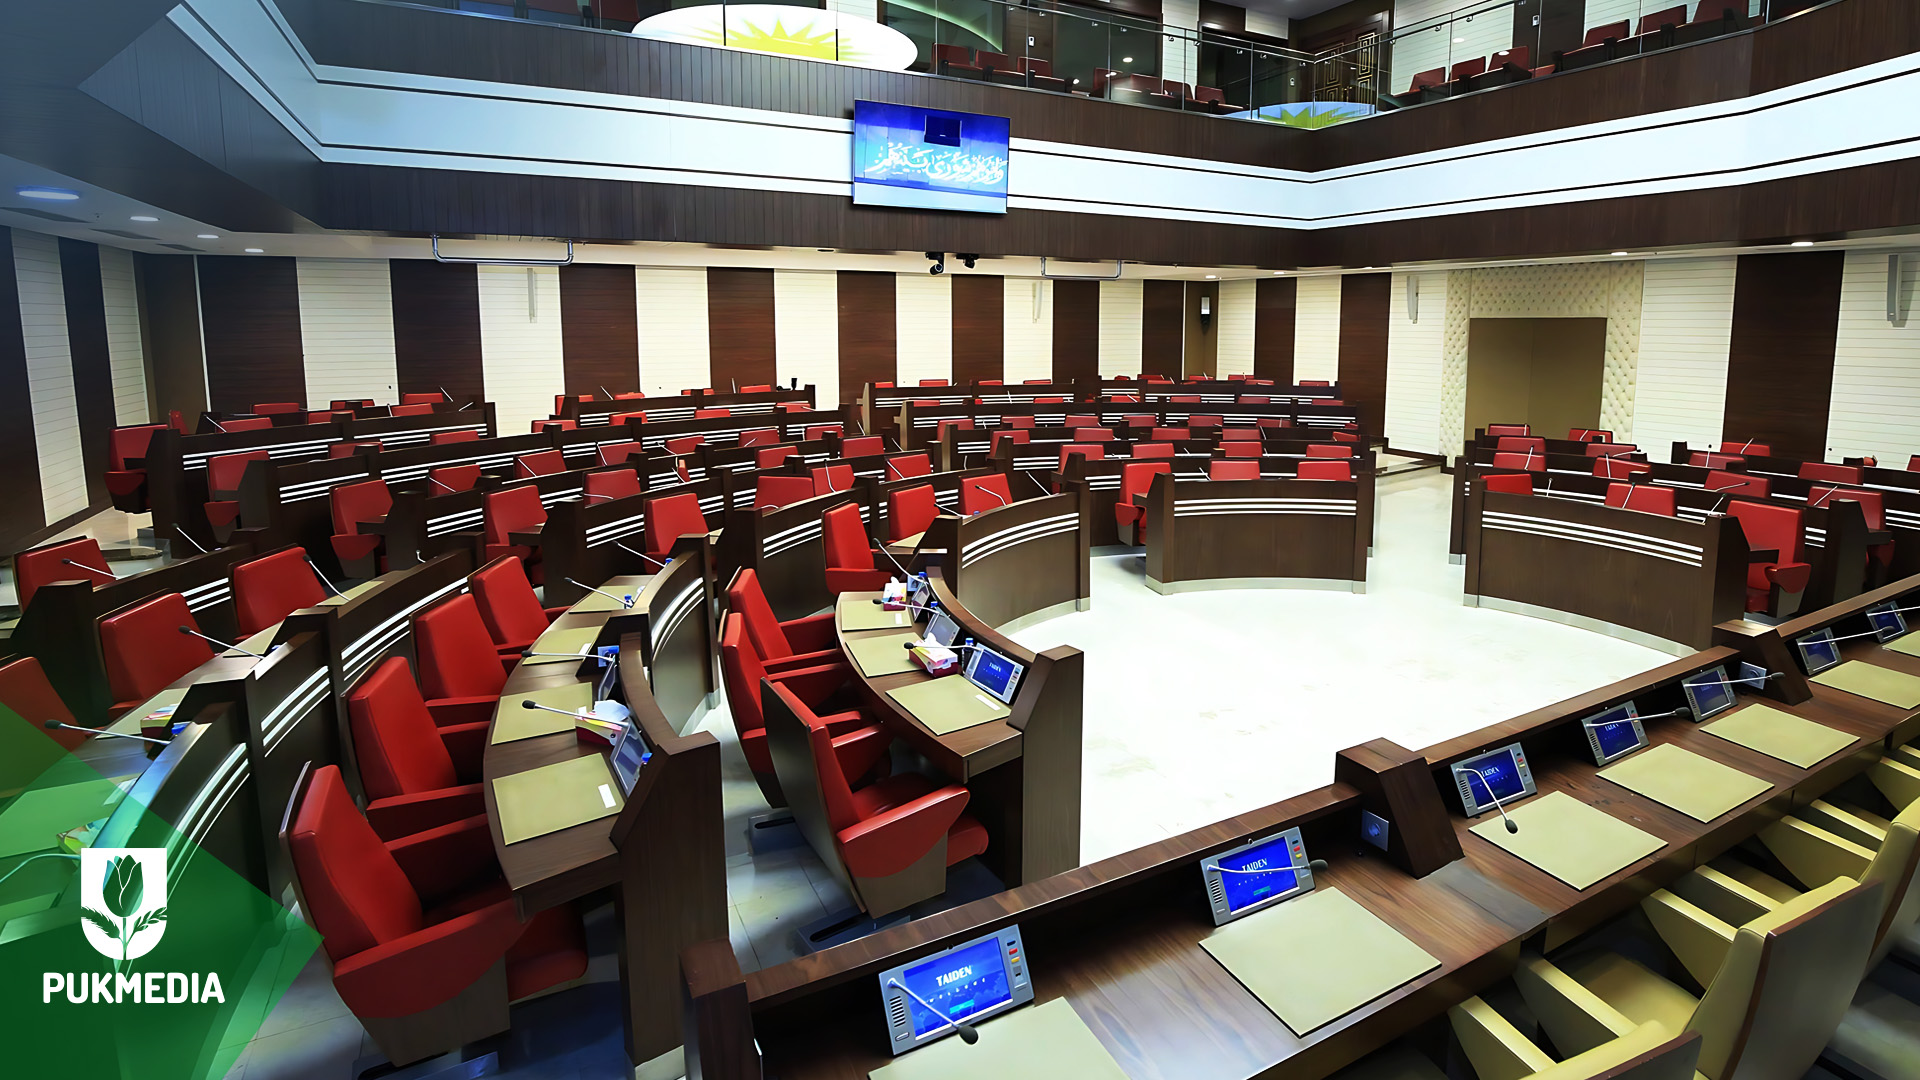  Kurdistan Parliament room